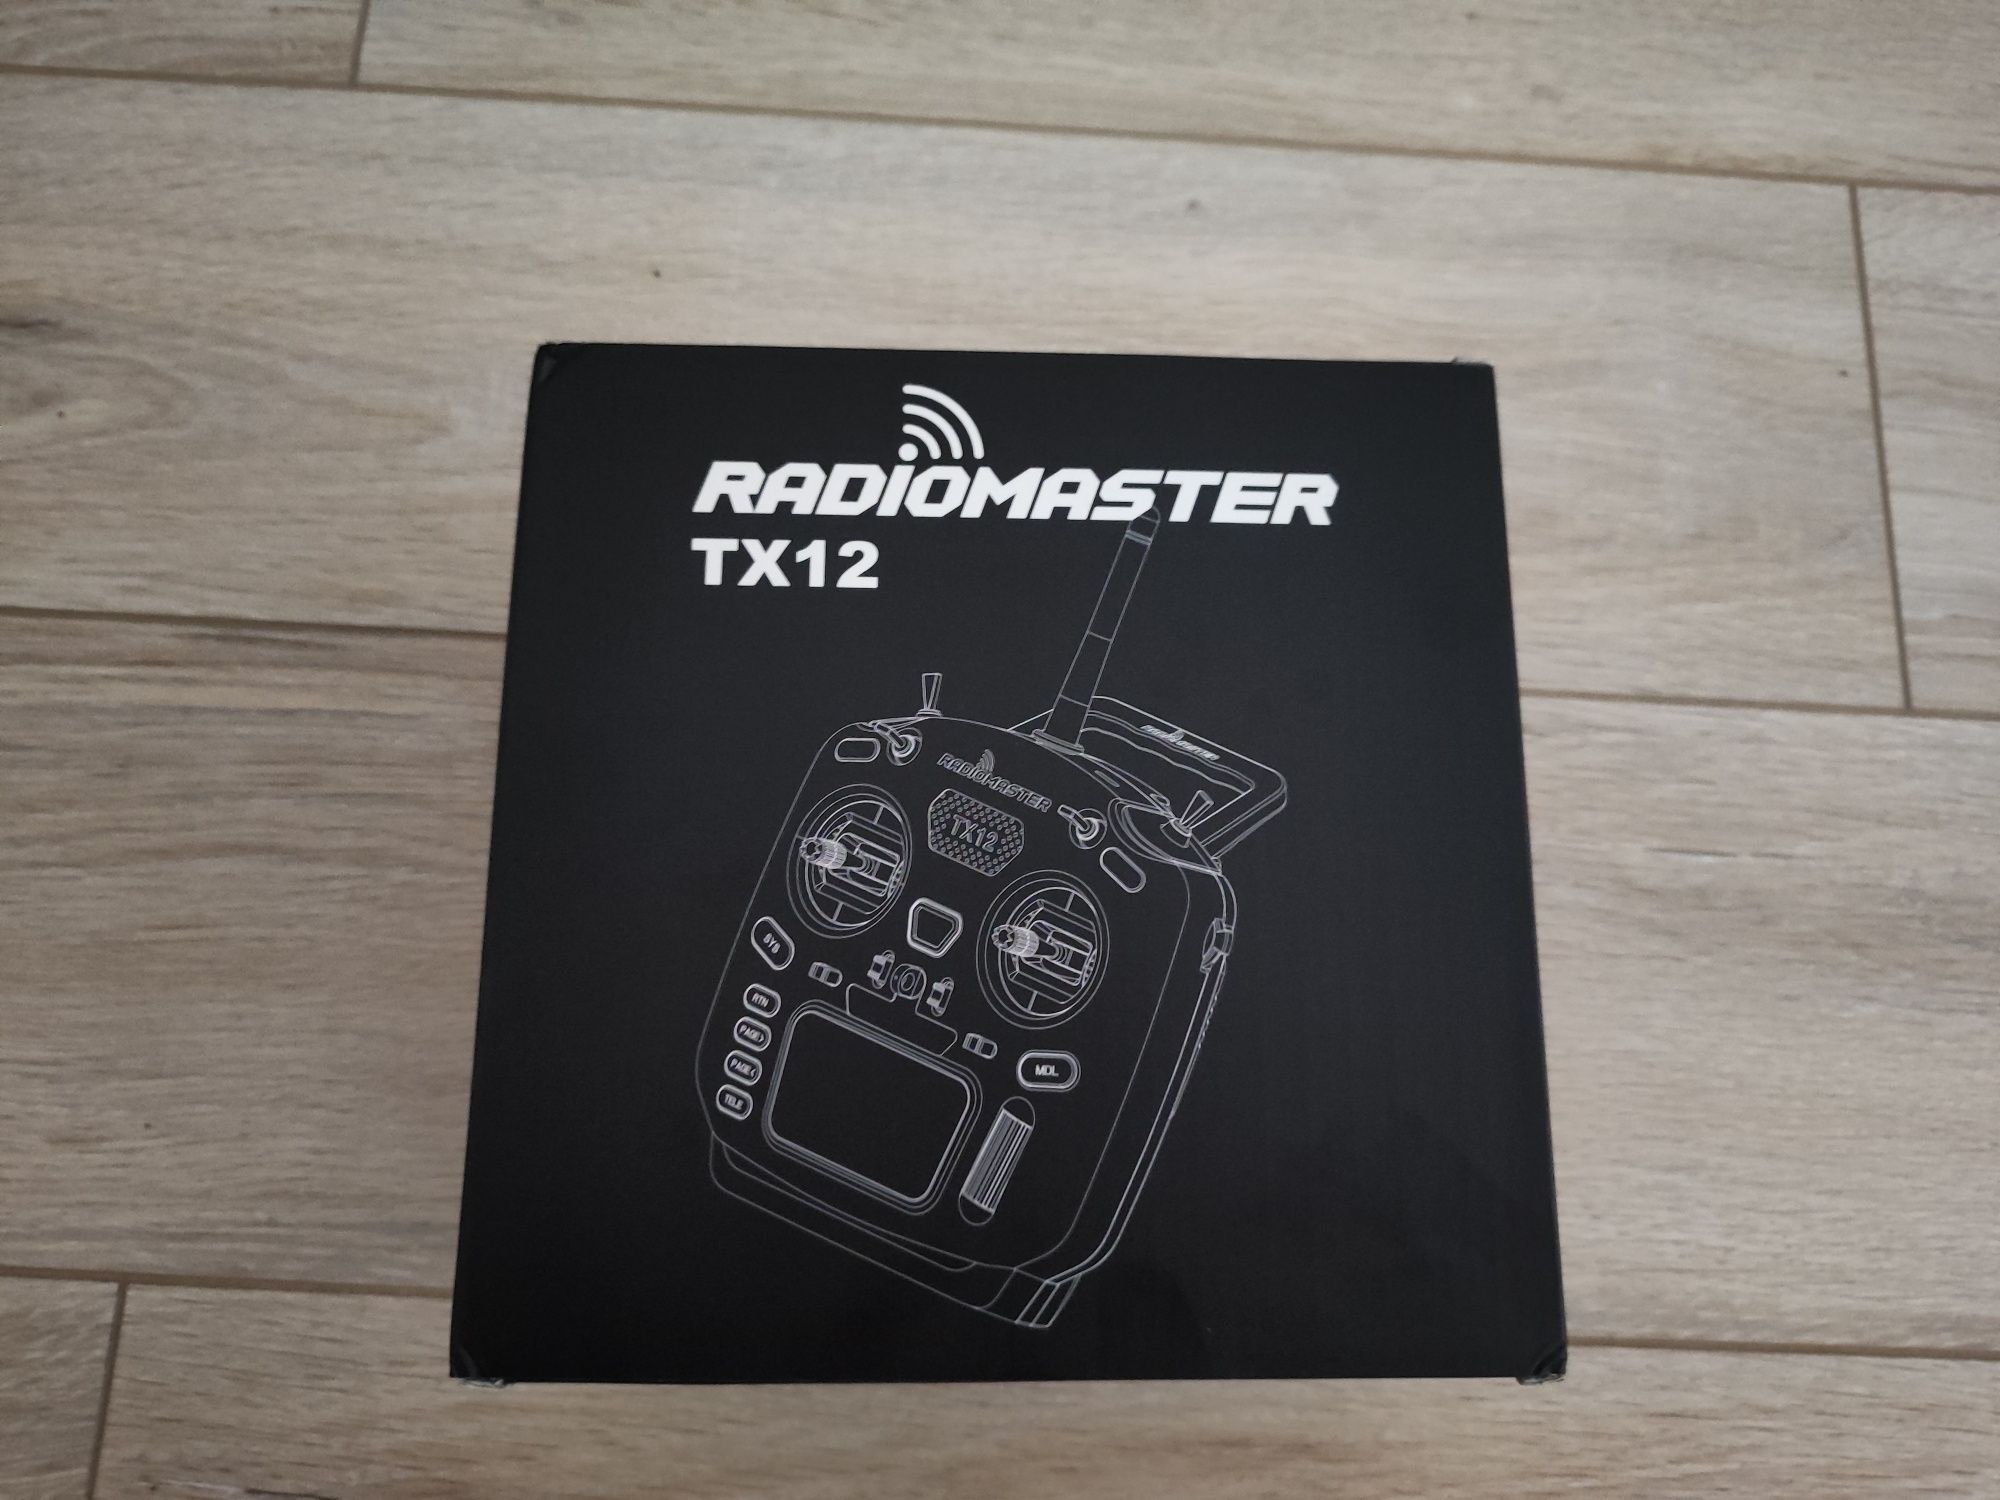 Radiomaster TX12 ELRS M2 новий пульт дистанційного керування дронами